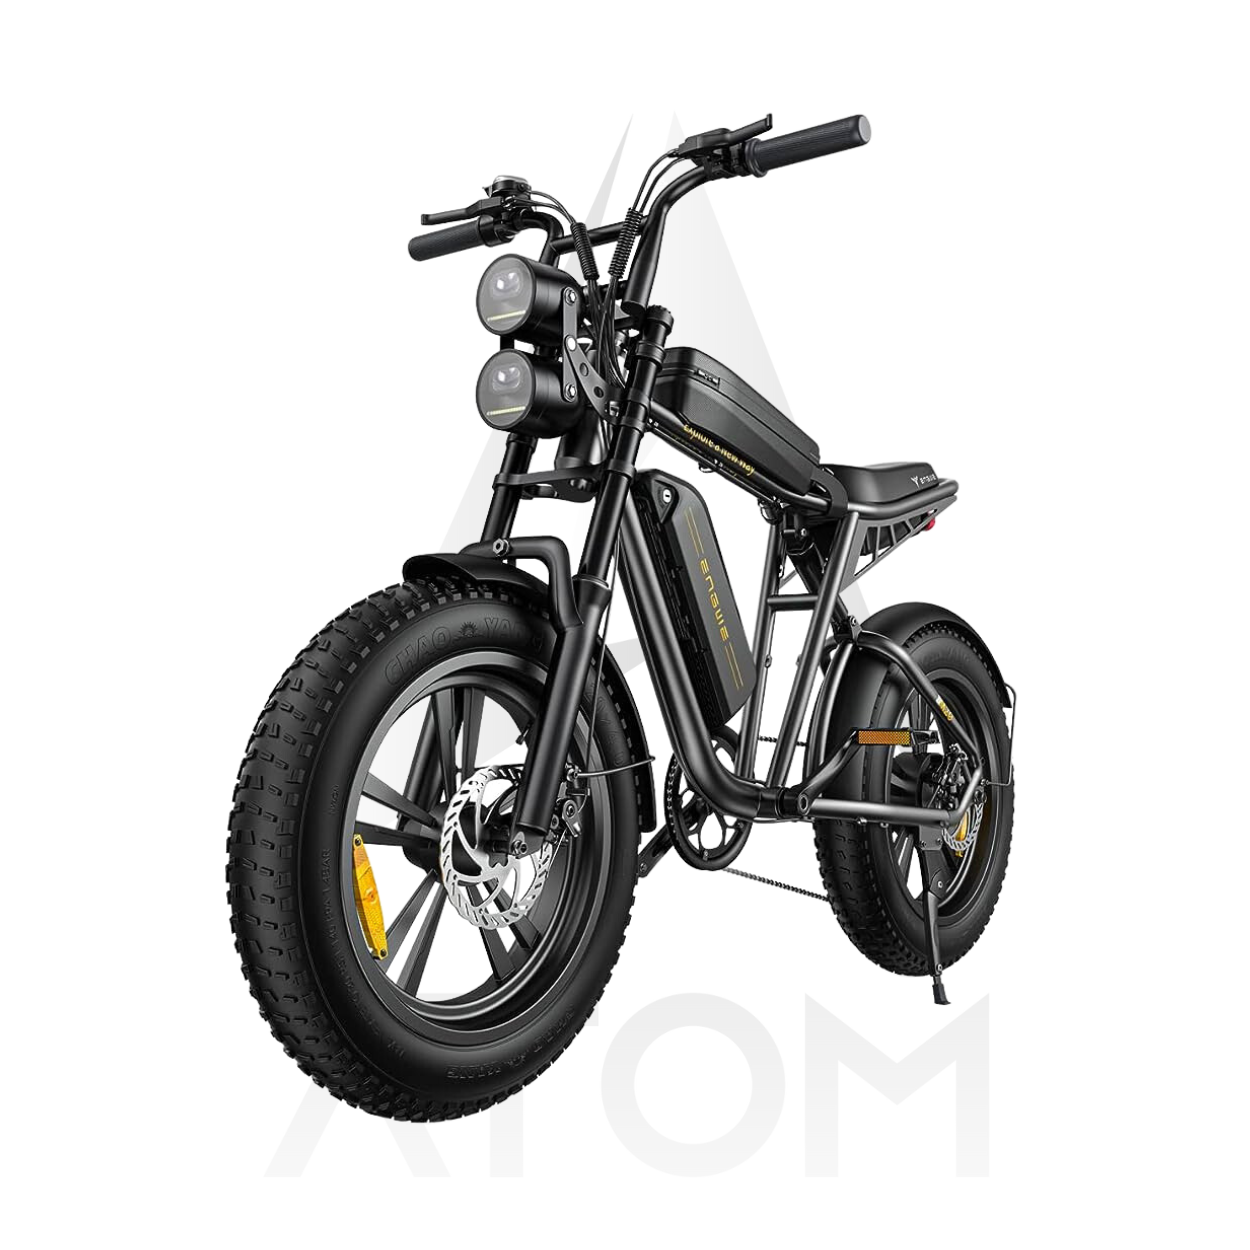 Vélo électrique Fatbike | Engwe M20 | 750 W | V-max 25 km/h | Autonomie 150 km - Atom Motors